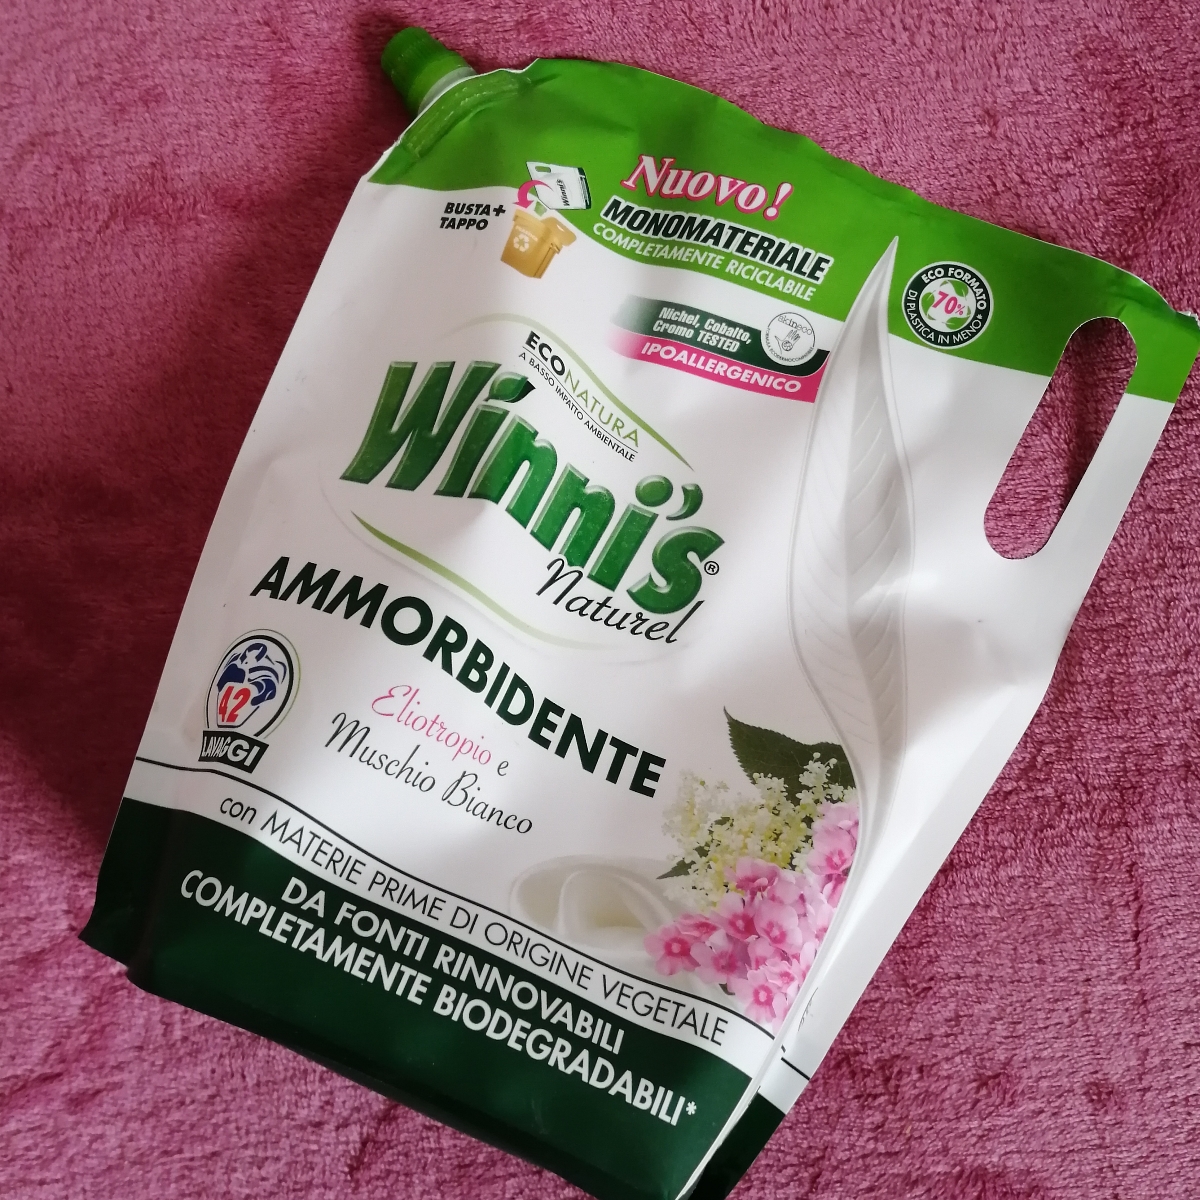 Winni's Naturel Ammorbidente ai fiori bianchi Review | abillion